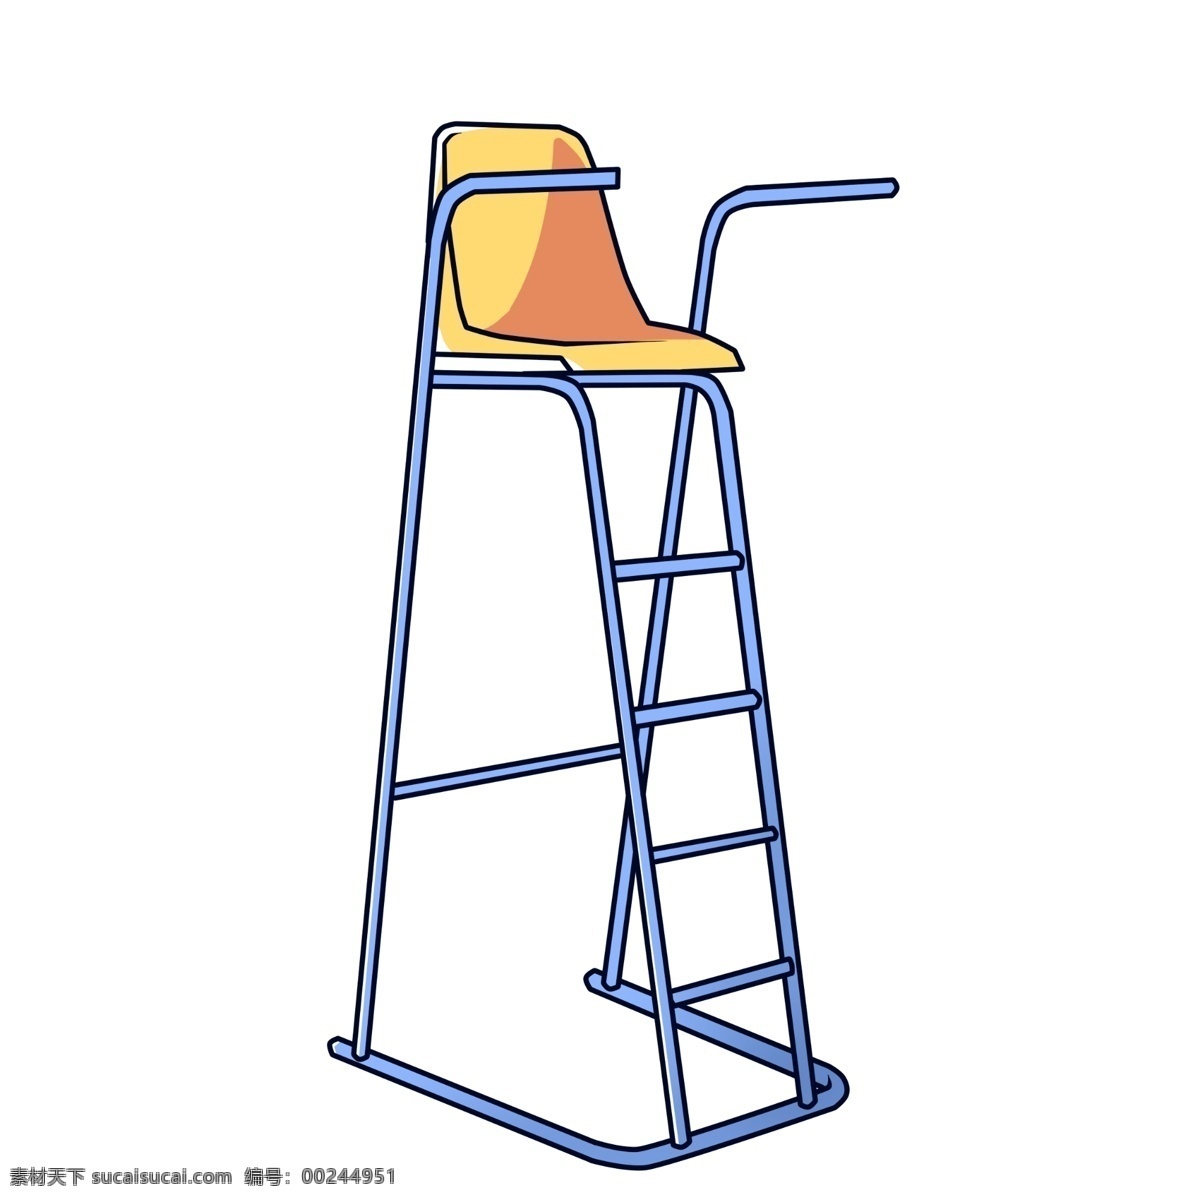 楼梯 椅子 装饰 插画 楼梯椅子 蓝色的楼梯 创意椅子 立体椅子 卡通椅子 家具椅子 椅子的插画